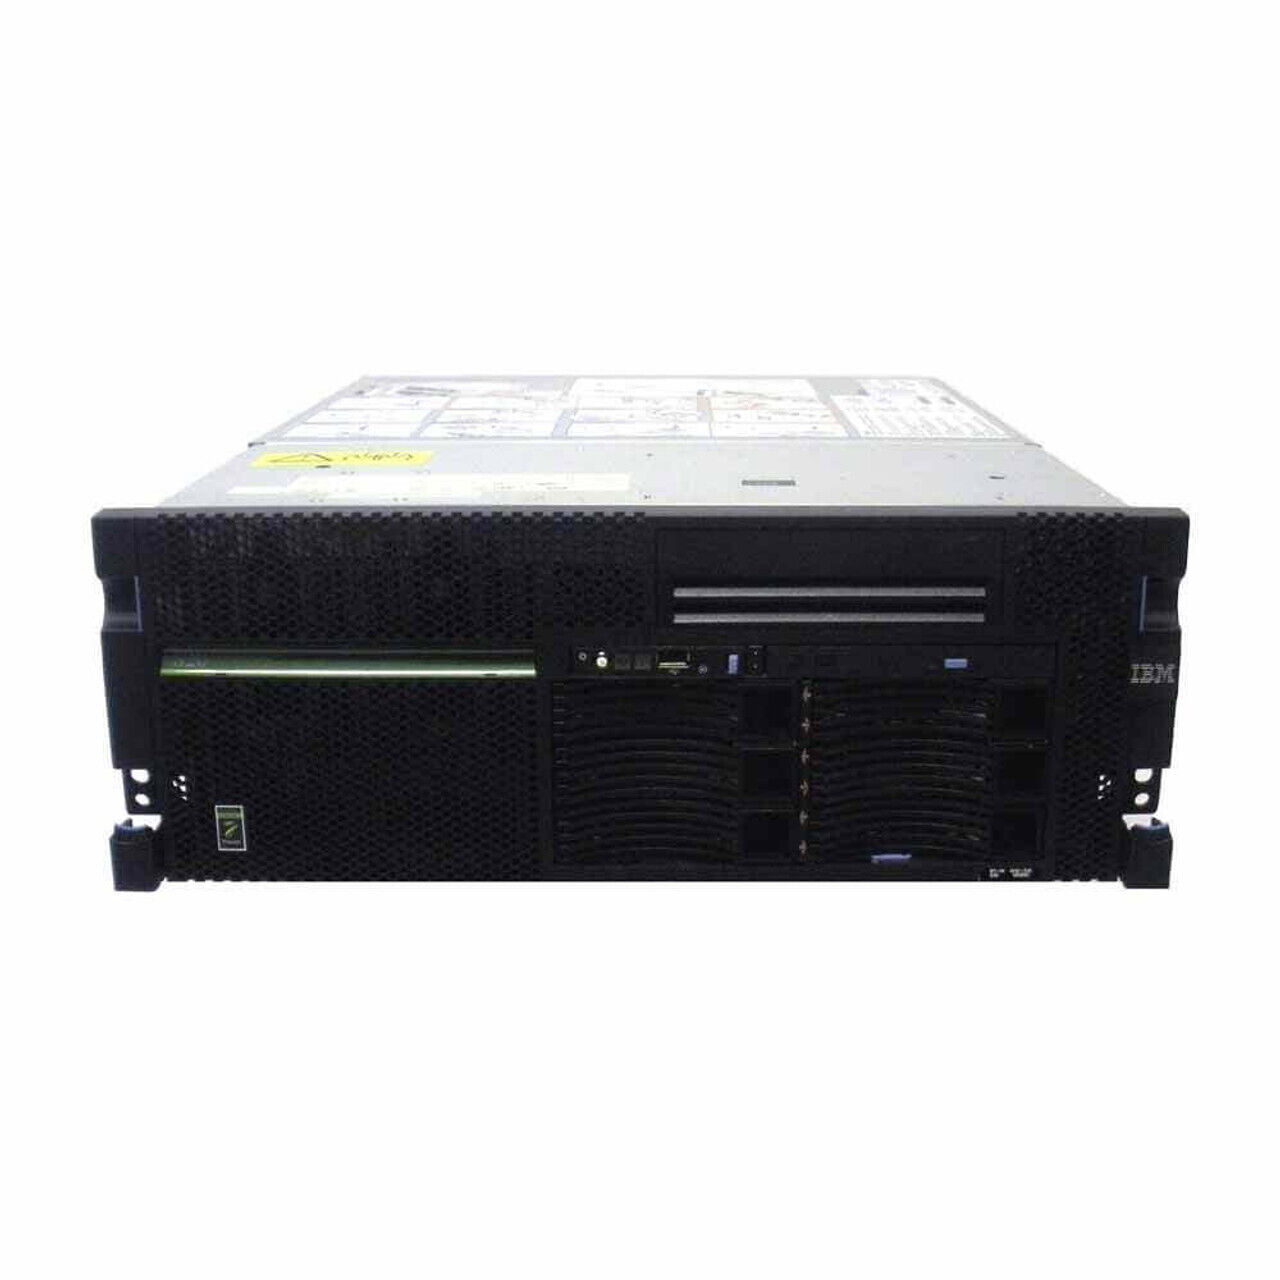 IBM 8202-E4D iSeries Power6 Server - Custom Build to Order